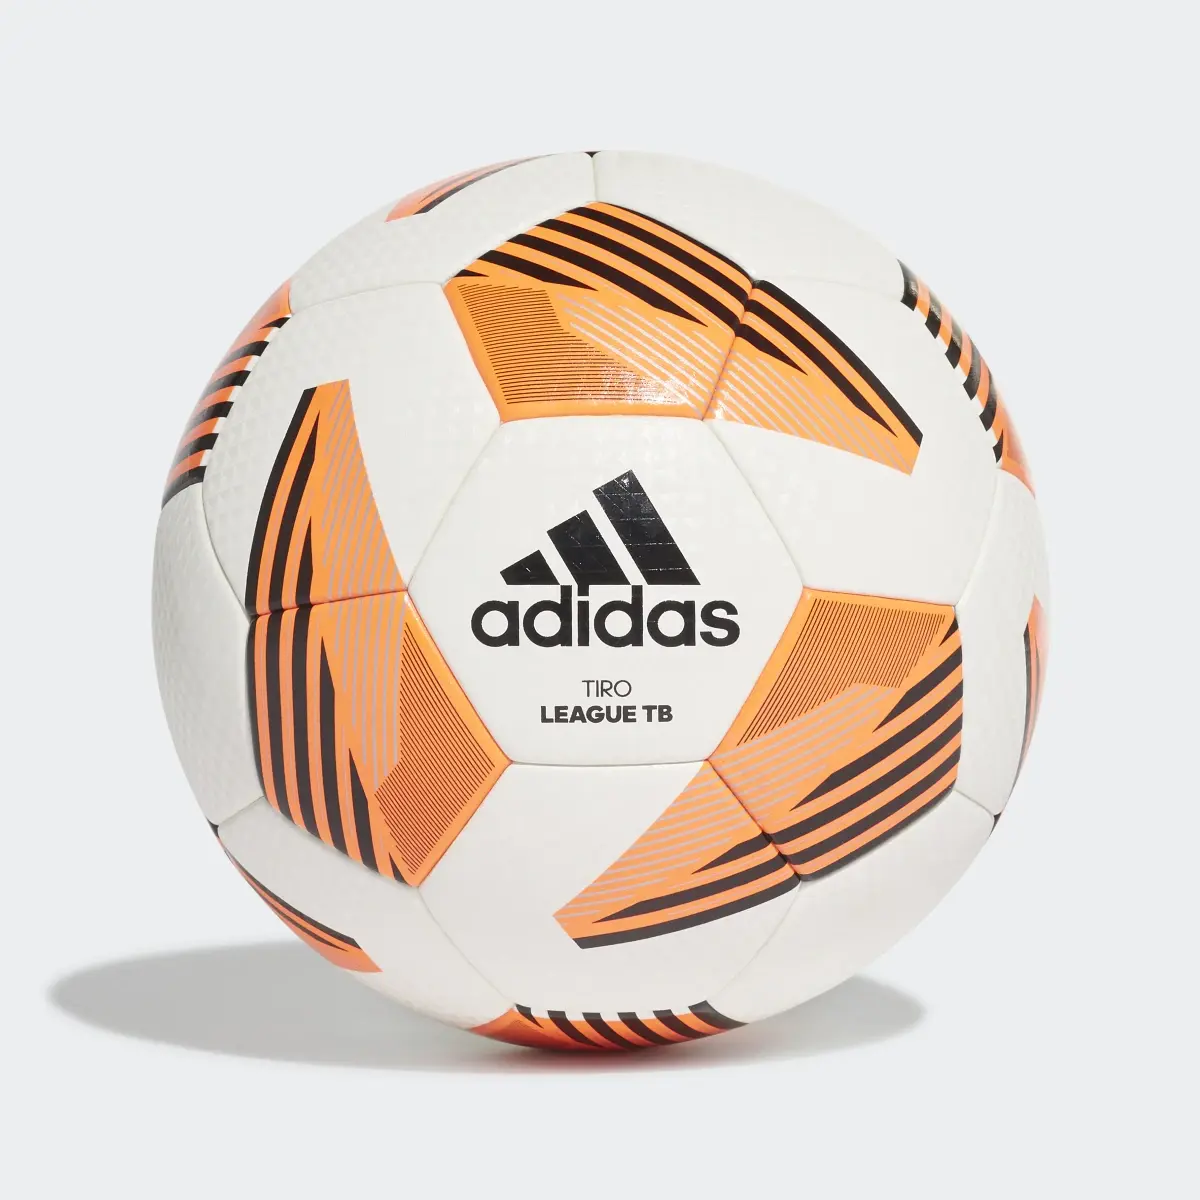 Adidas Tiro League TB Ball. 2